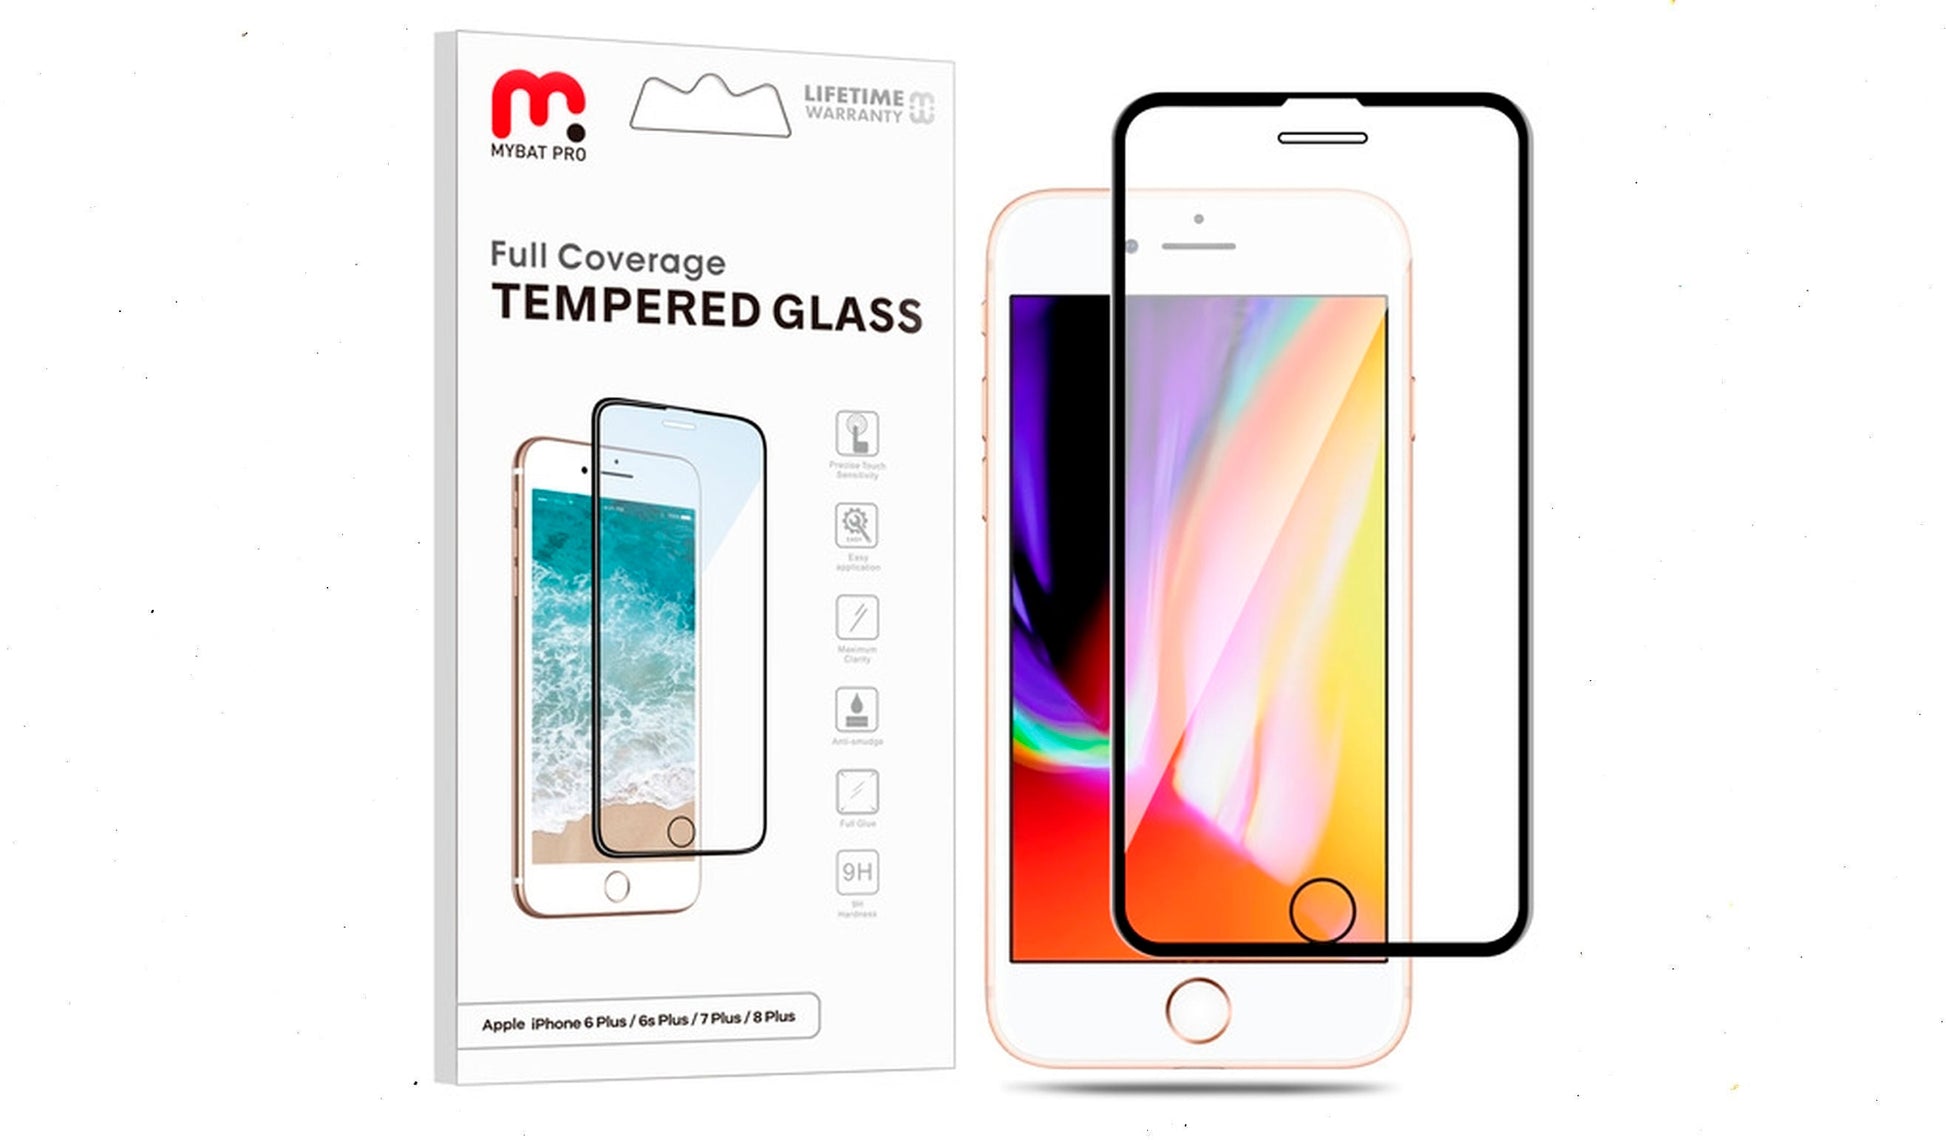 Vidrio temperado MayBat Pro, para iPhone 7Plus/8Plus/6sPlus freeshipping - iStore Costa Rica